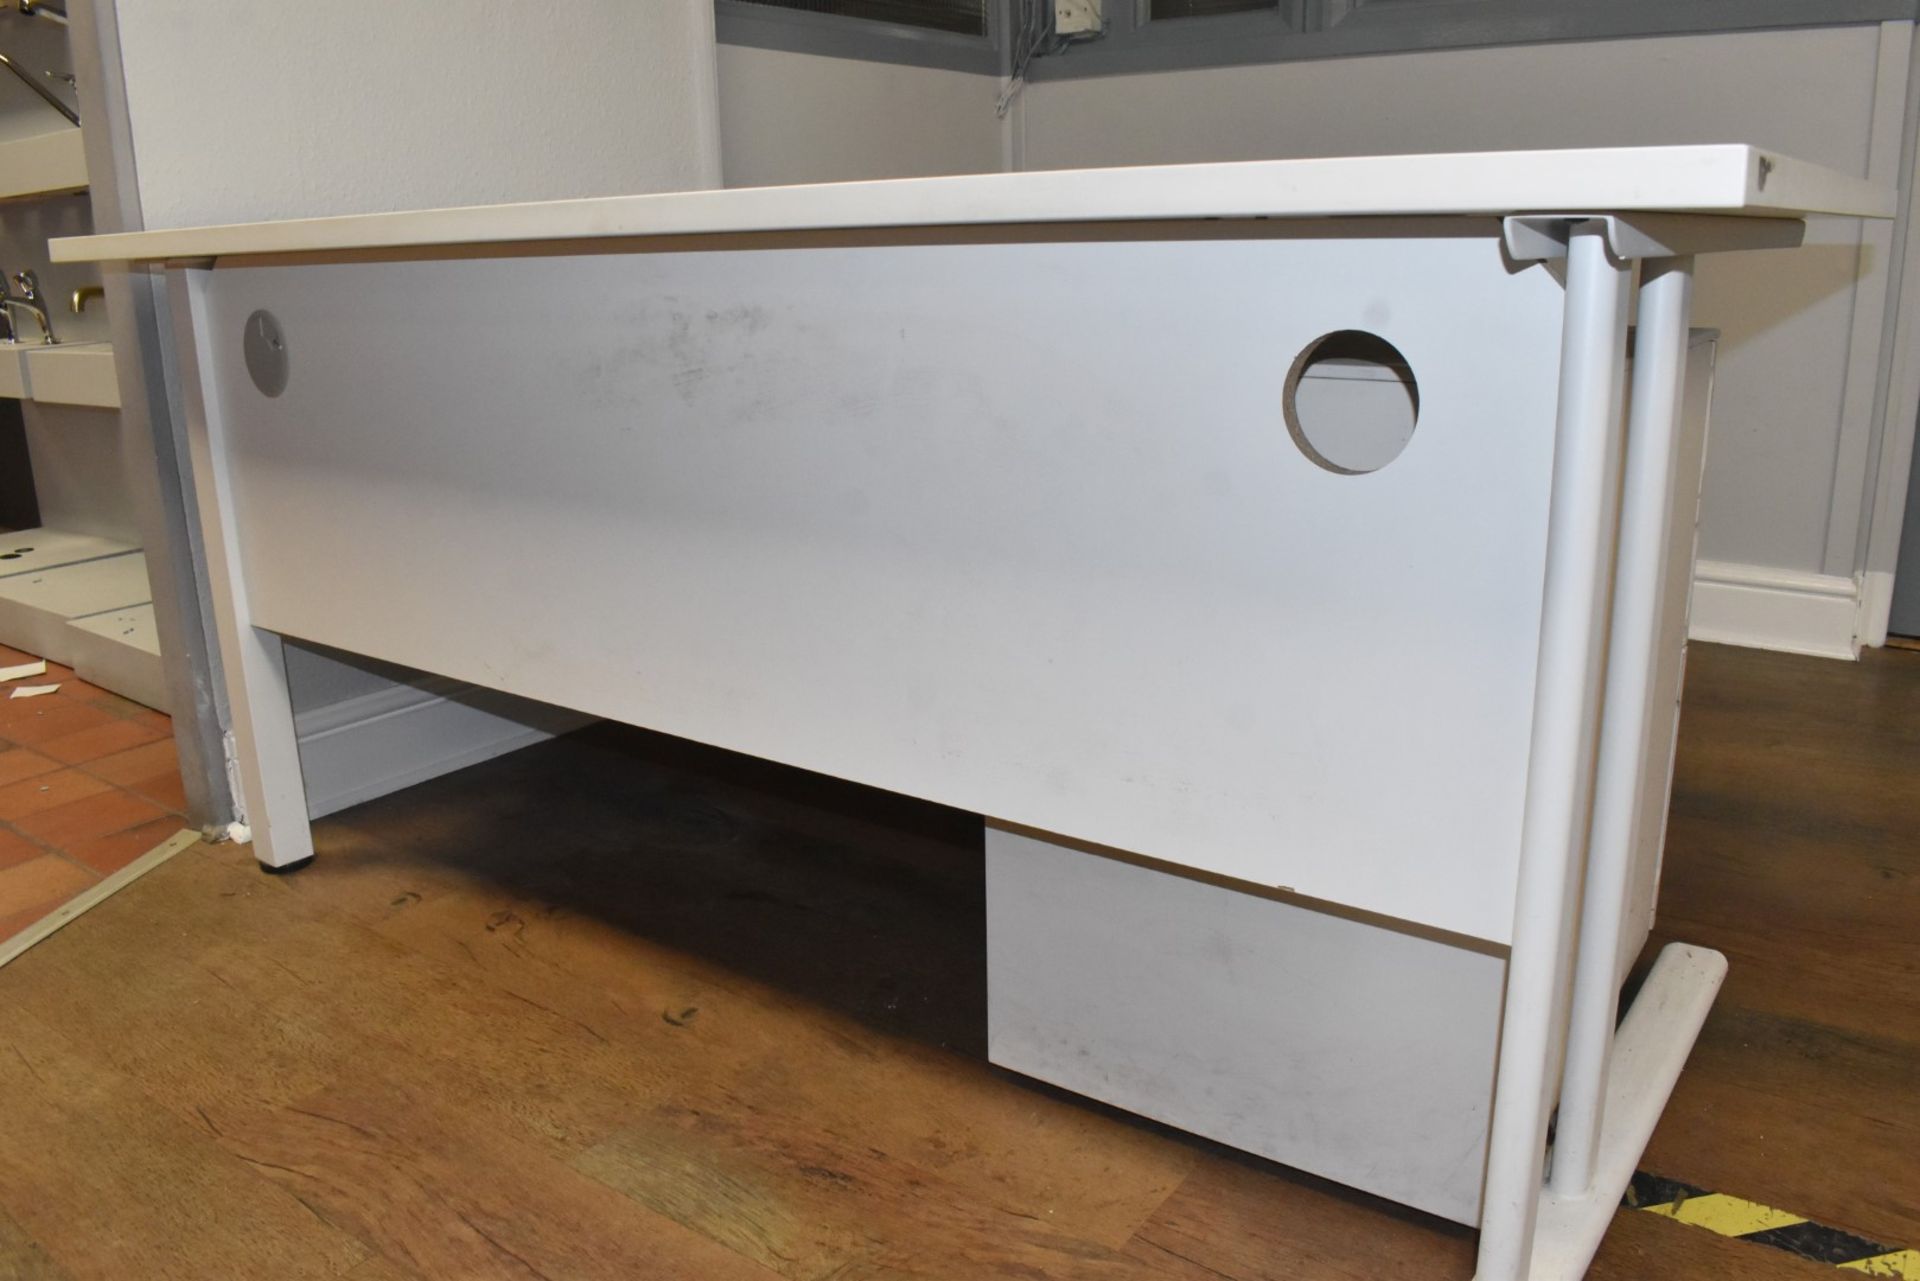 1 x Office Furniture Set Including a Corner Desk, Drawer Pedestal and Sliding Door Cabinet - Image 4 of 10